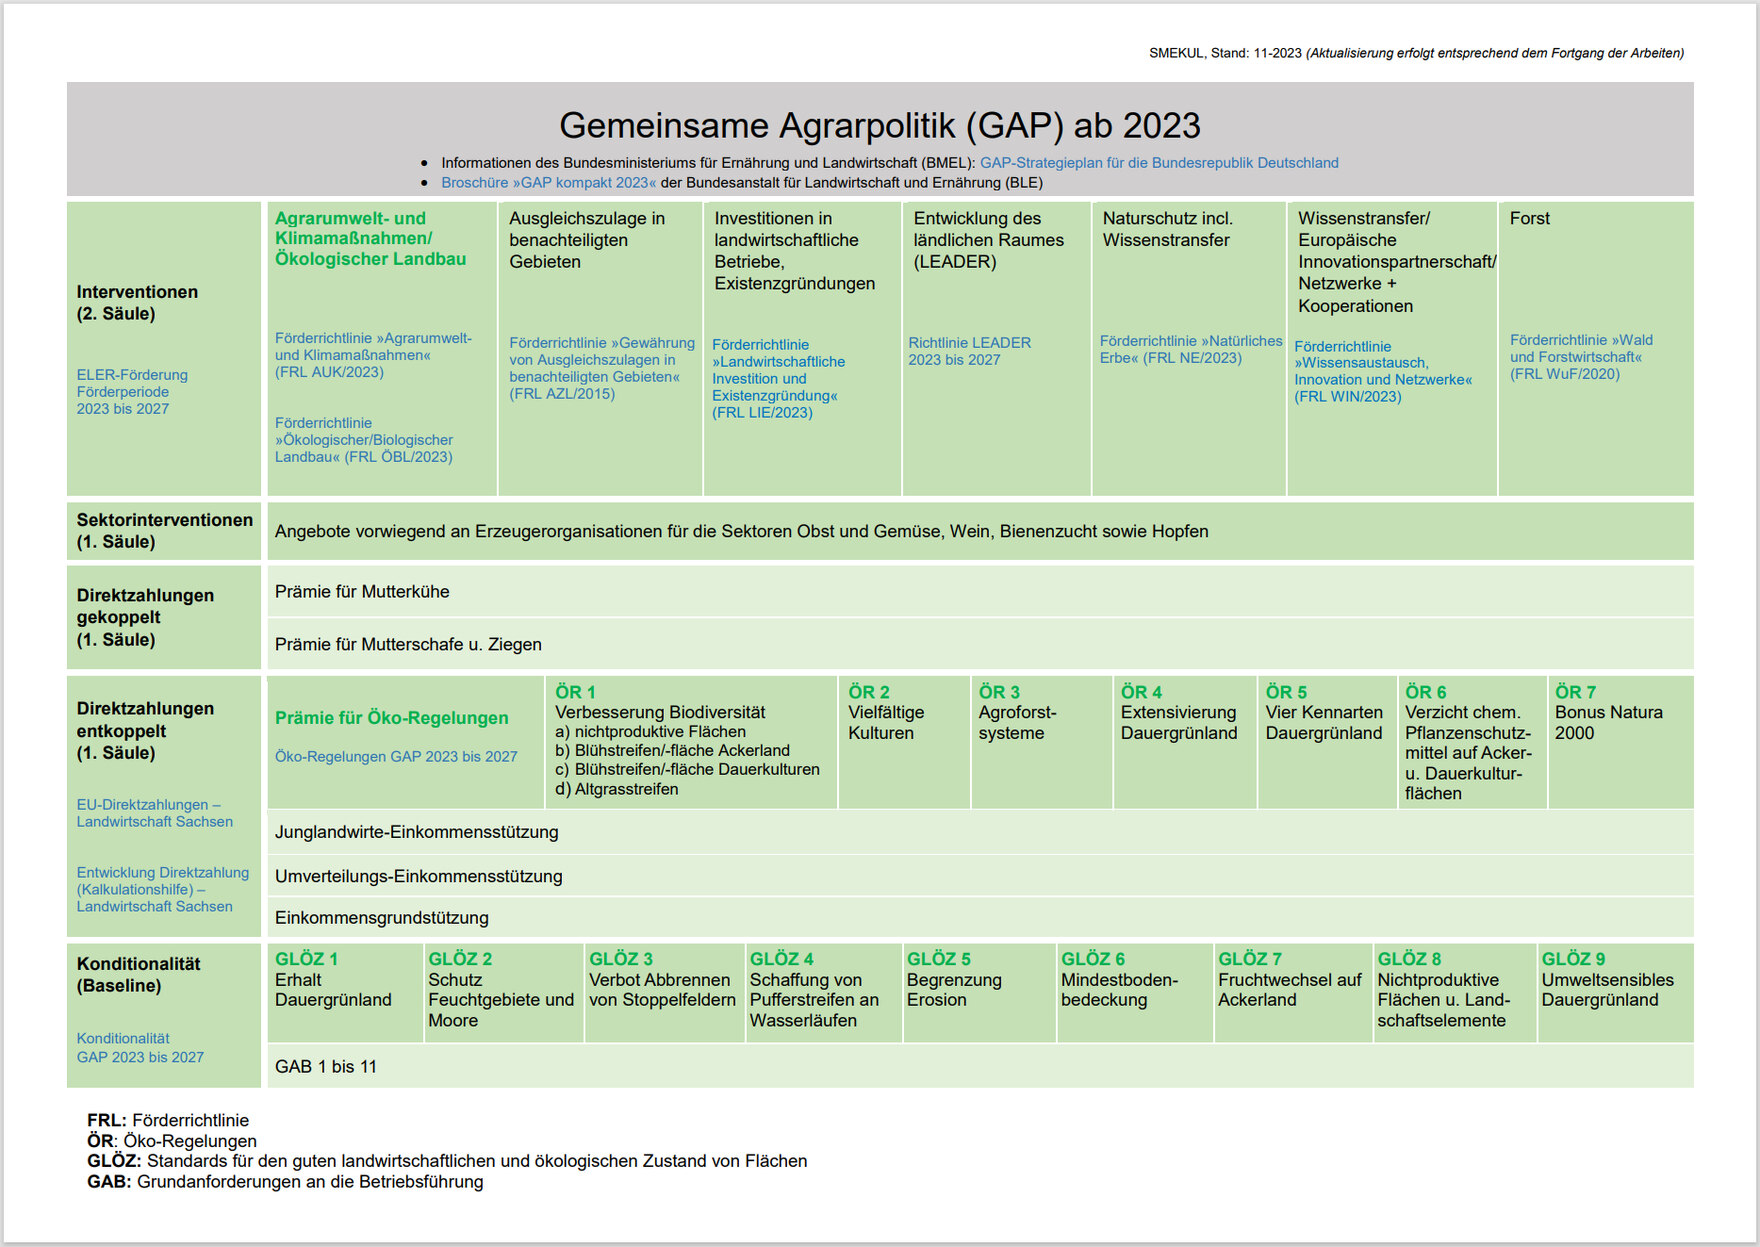 Tabelle mit einer Übersicht über die Maßnahmen der Gemeinsamen Agrarpolitik (GAP) ab 2023